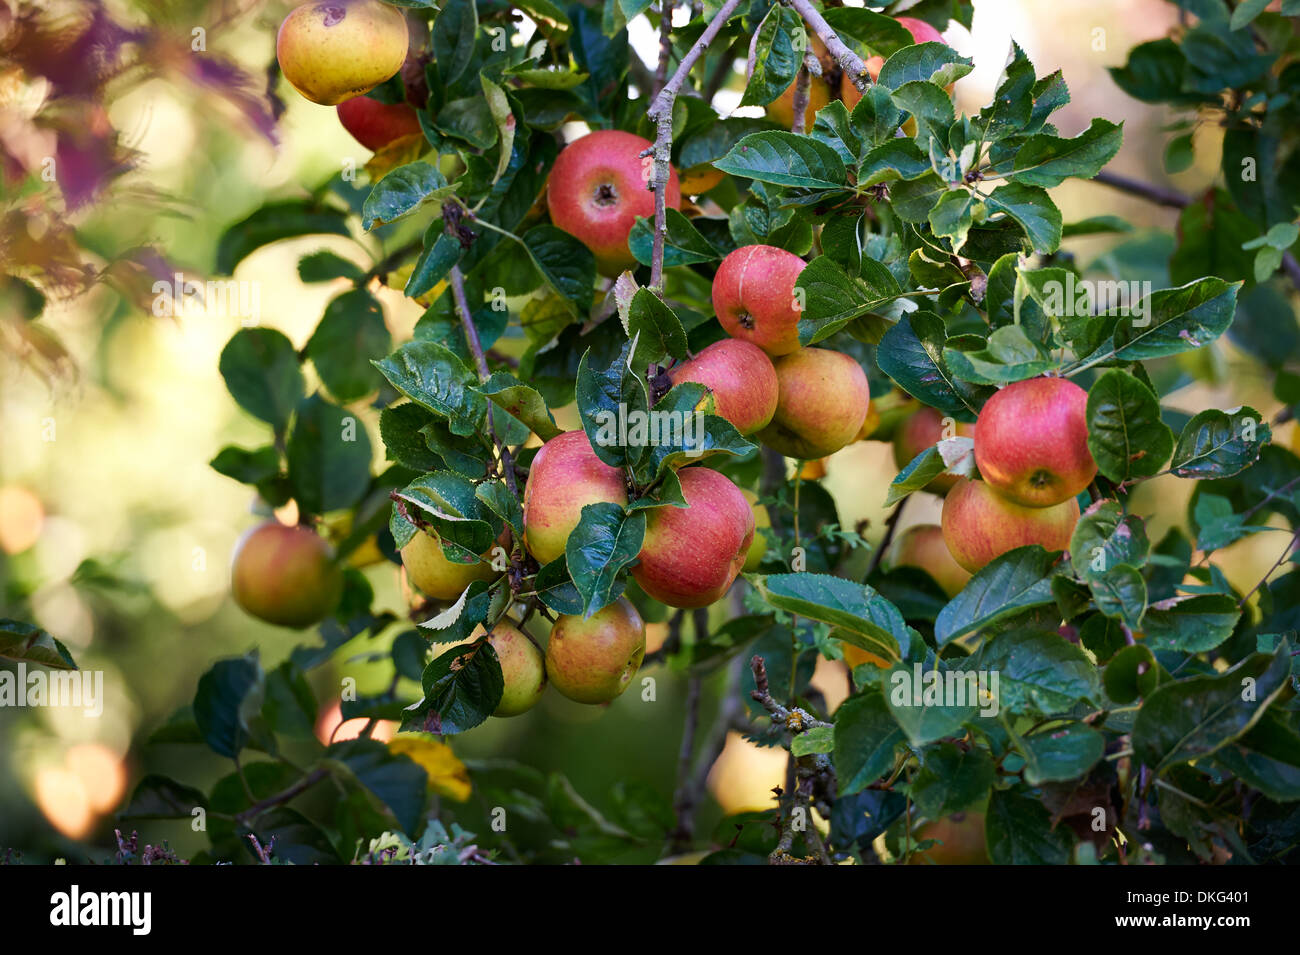 Árbol de manzanas con manzanas maduras Foto de stock